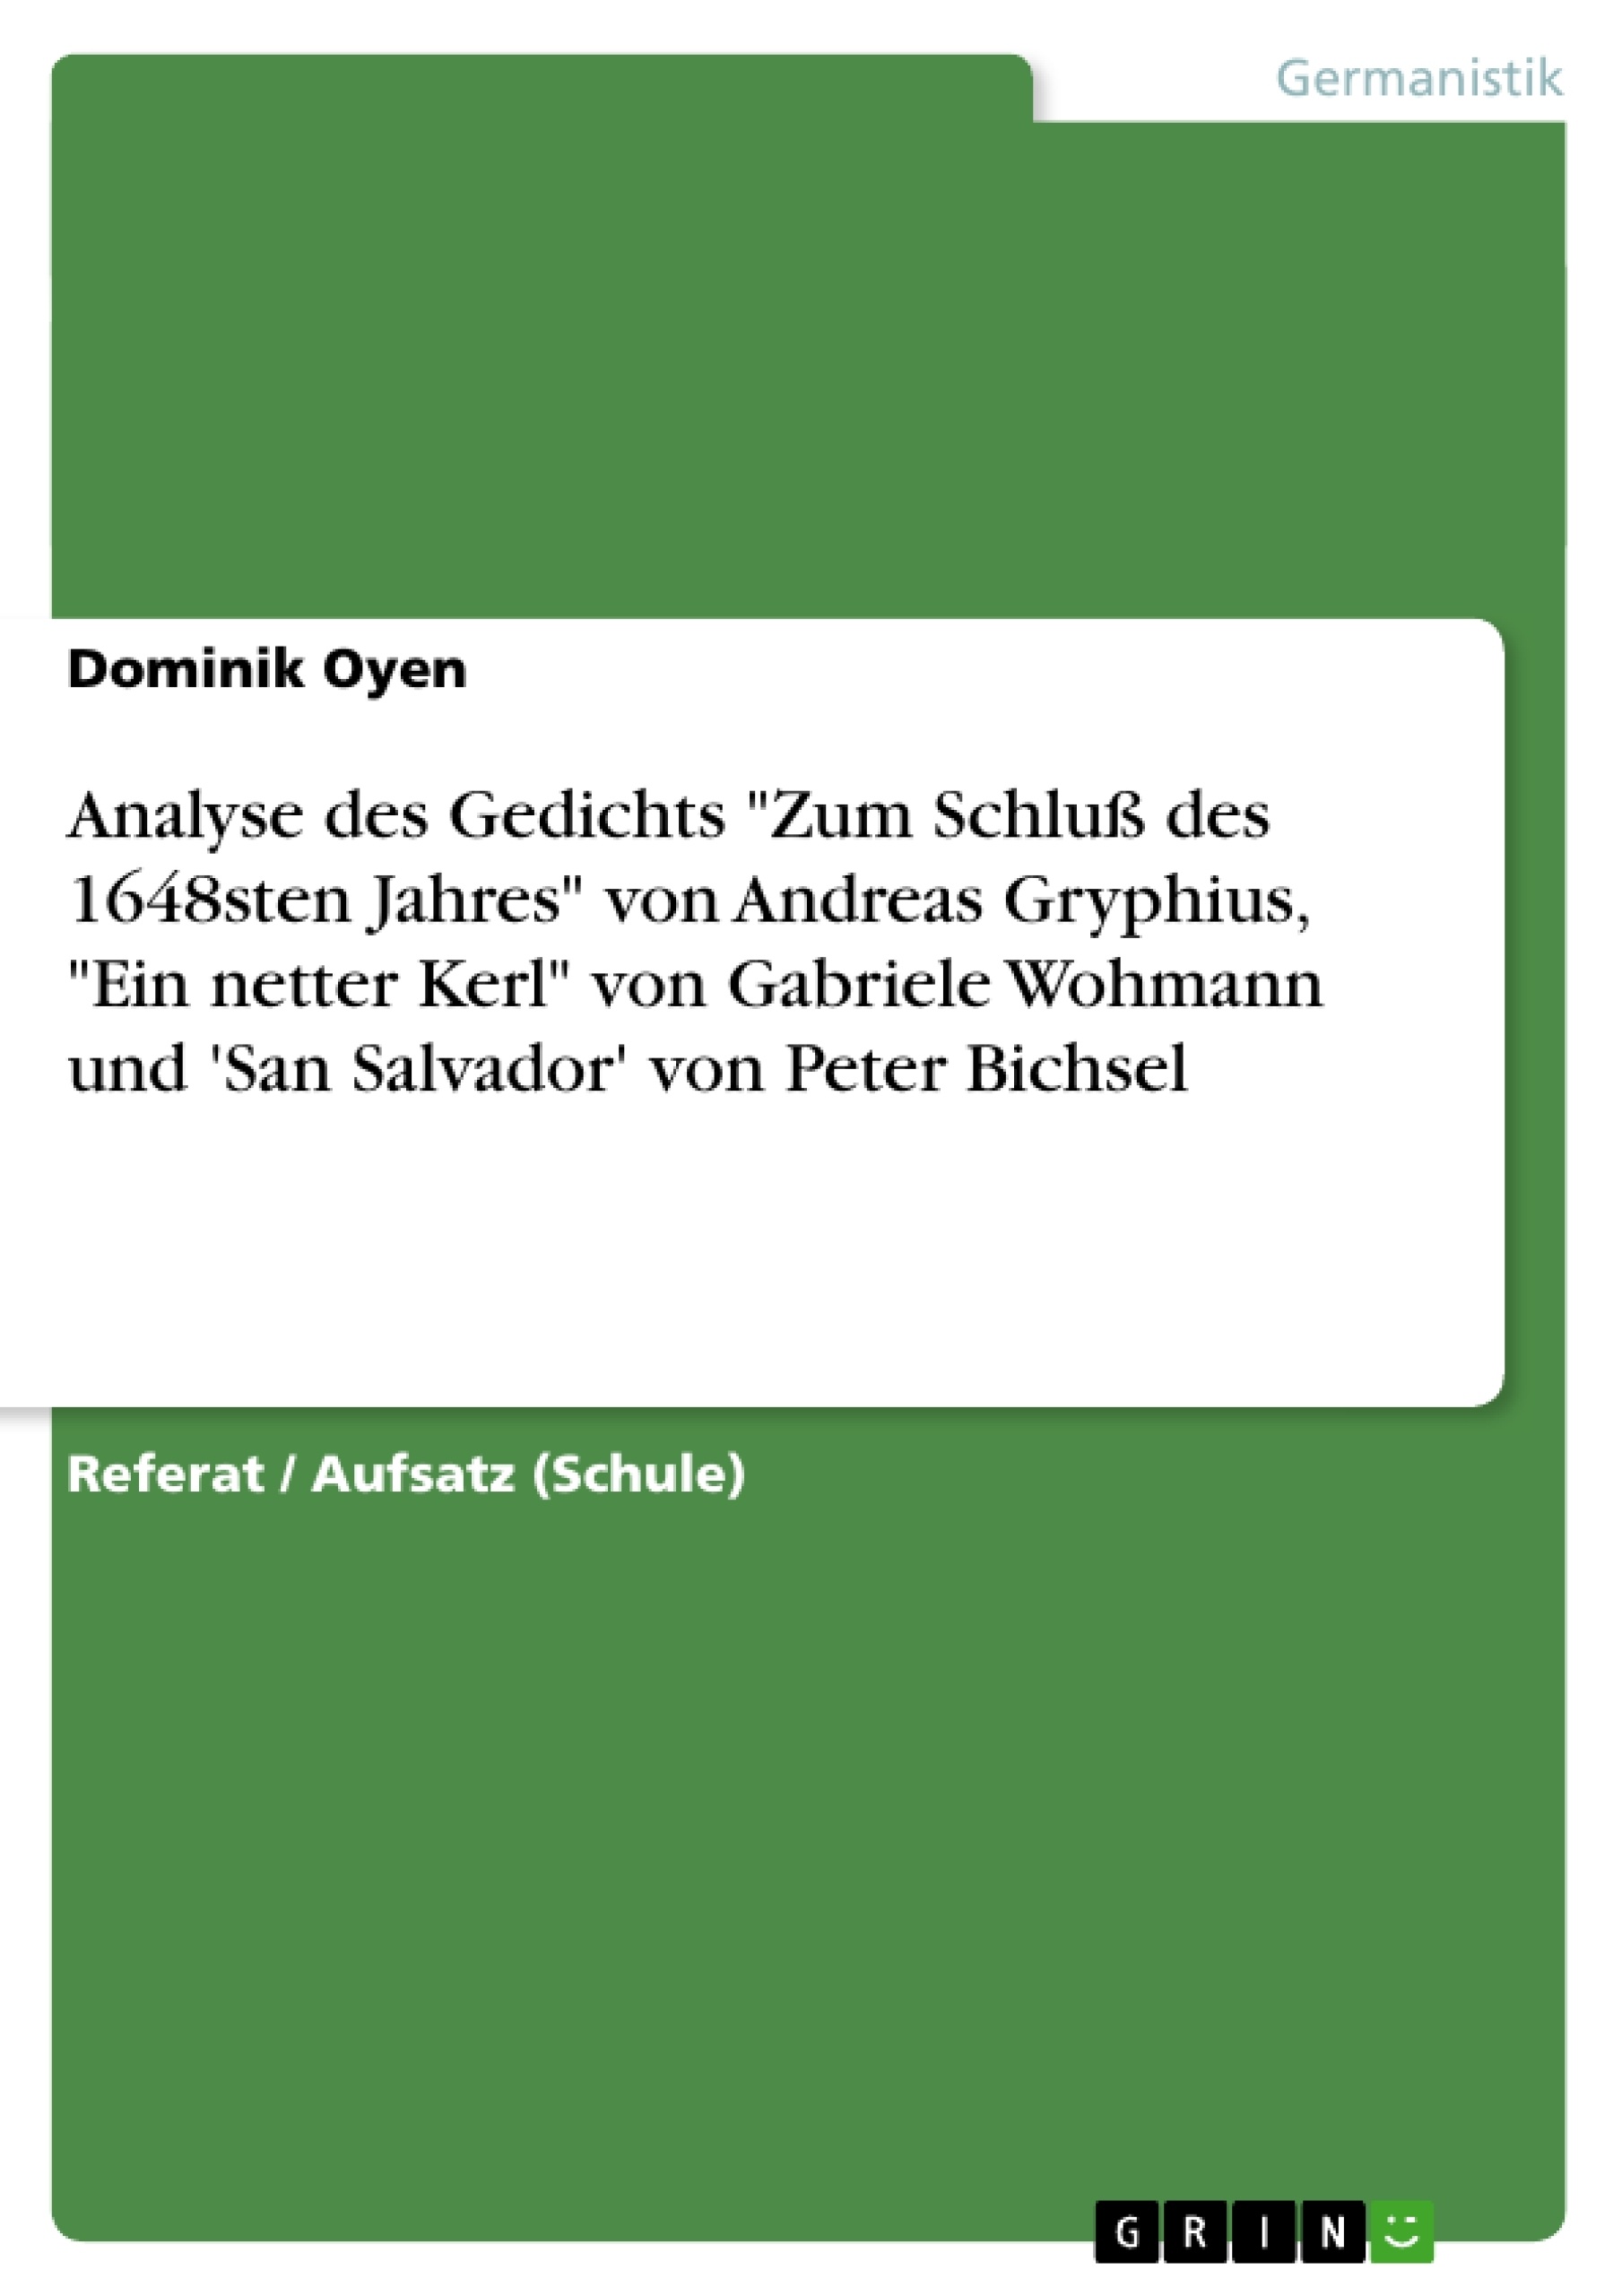 Titre: Analyse des Gedichts "Zum Schluß des 1648sten Jahres" von Andreas Gryphius,  "Ein netter Kerl"  von   Gabriele Wohmann und   'San Salvador'  von  Peter Bichsel